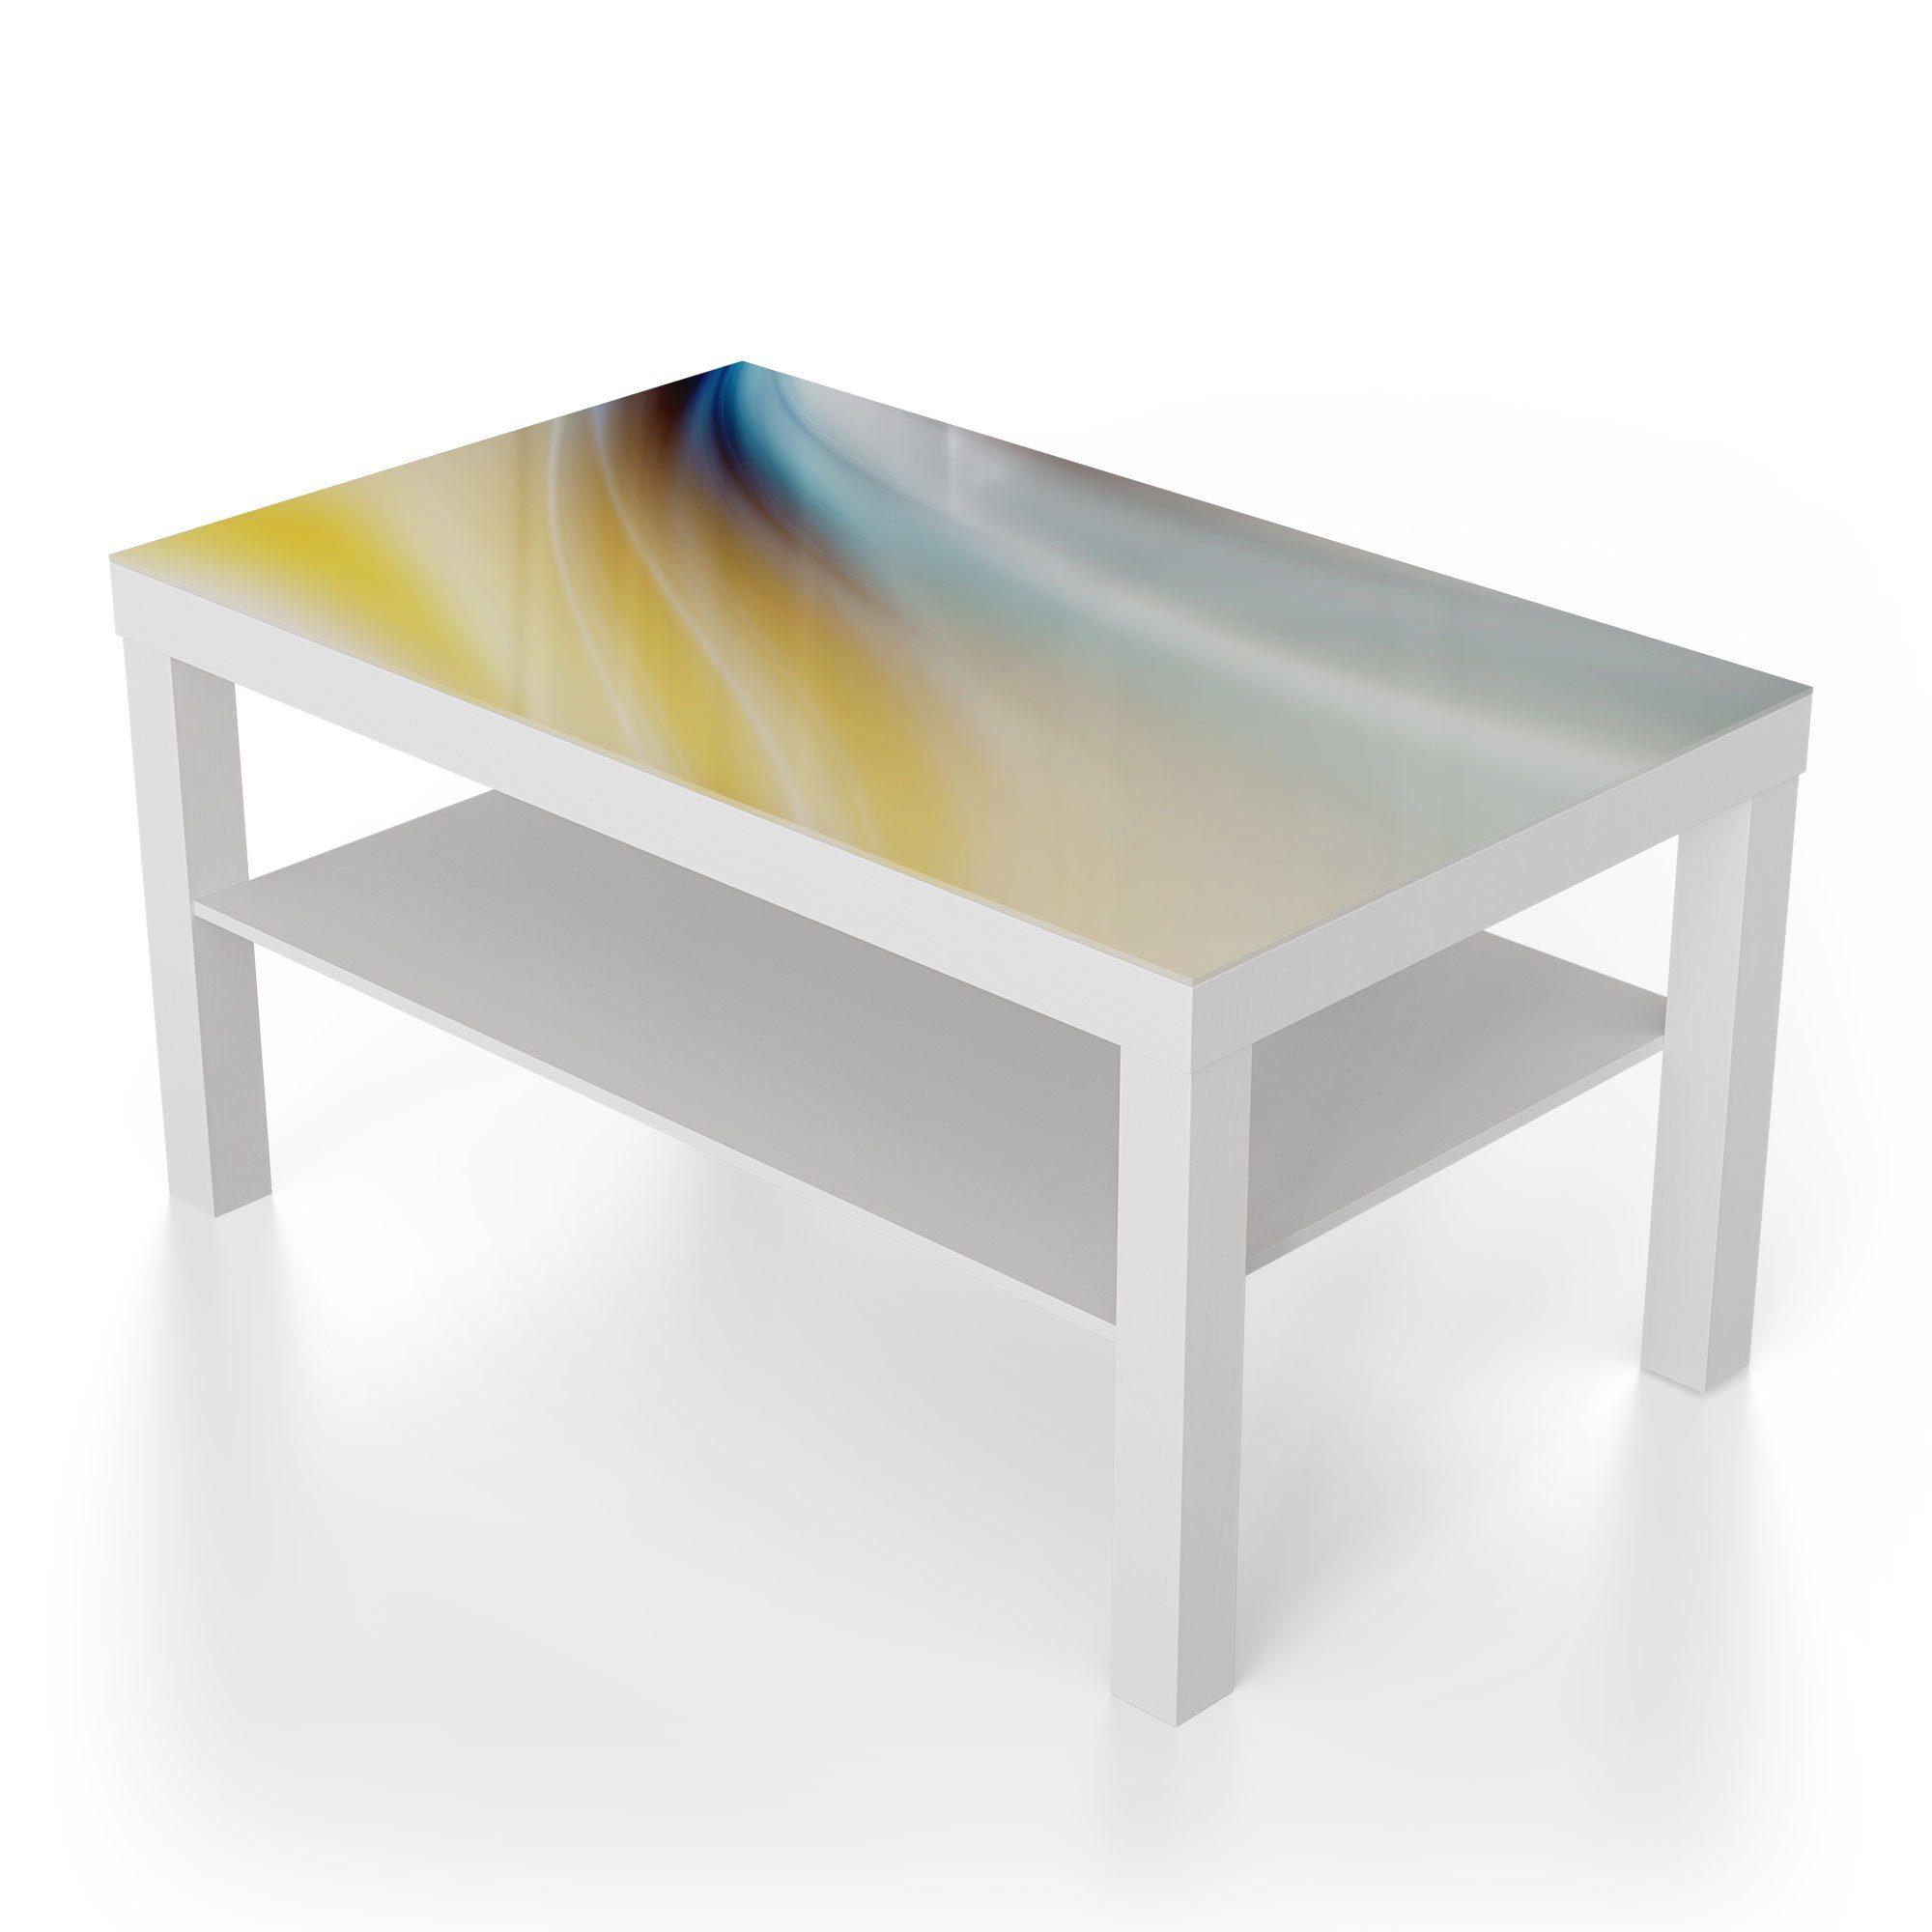 'Warmer Beistelltisch DEQORI Farbverlauf', Glas modern Weiß Couchtisch Glastisch